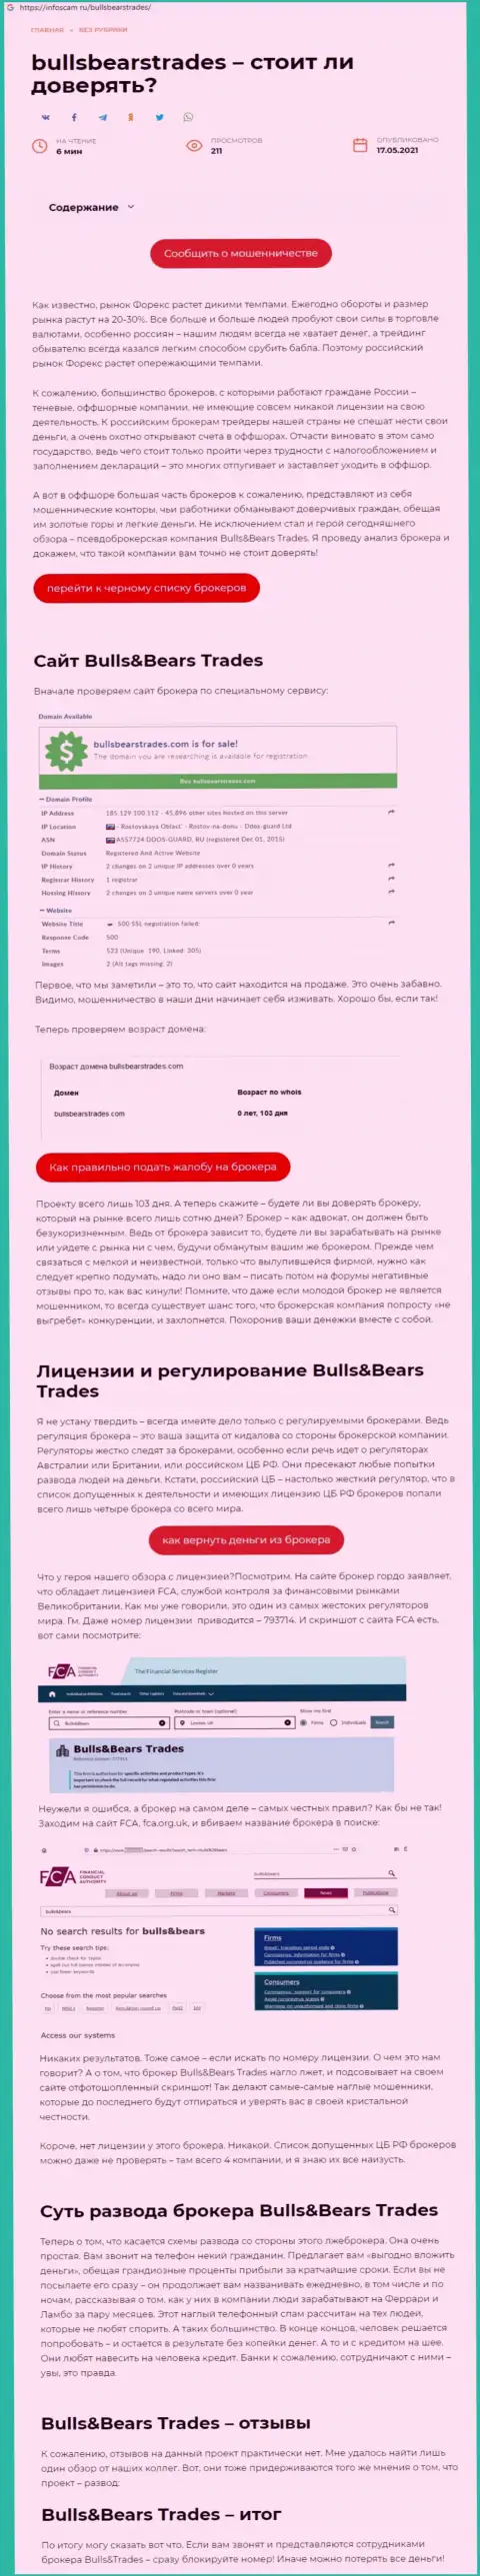 Bulls Bears Trades - это ОБМАНЩИК !!! Схемы одурачивания (обзор махинаций)